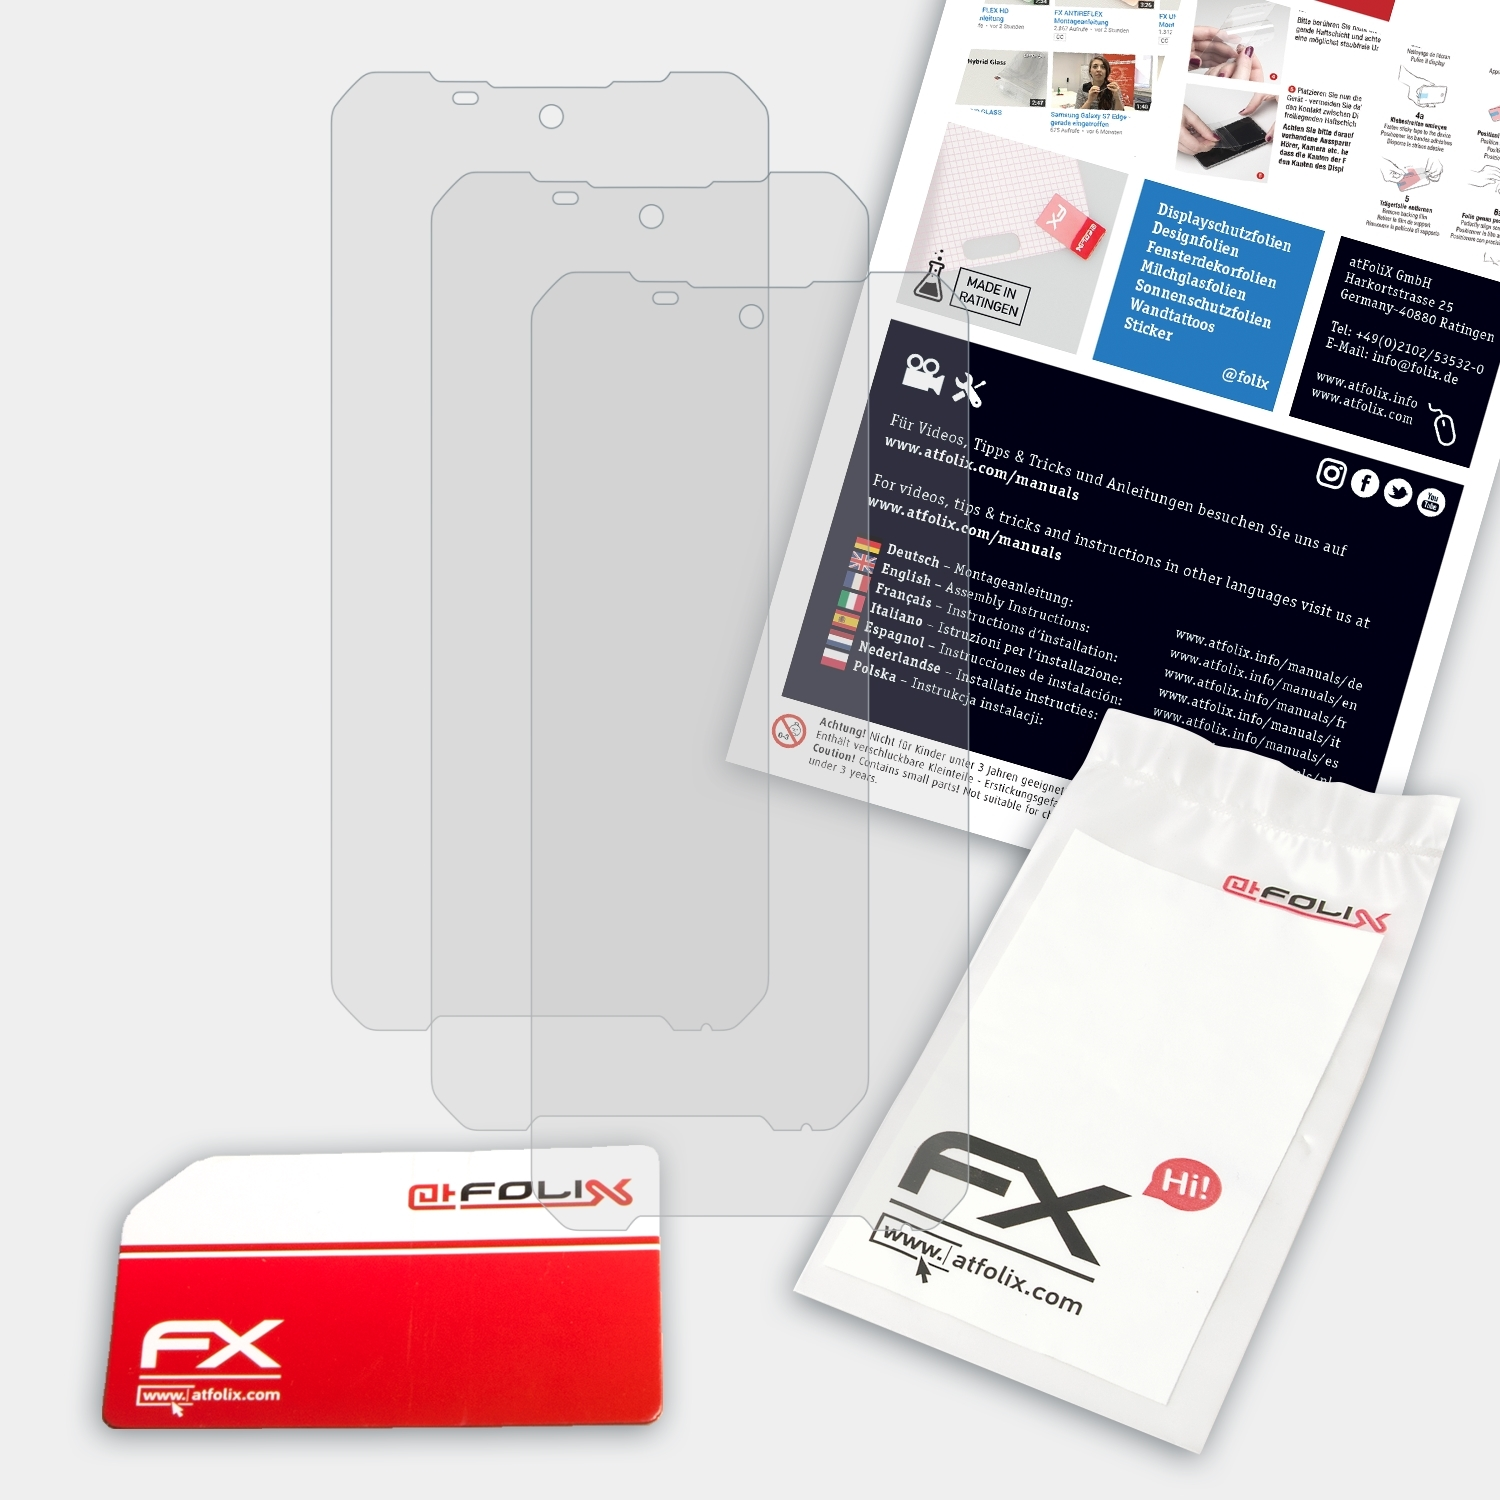 ATFOLIX 3x FX-Antireflex Doogee Displayschutz(für S58 Pro)